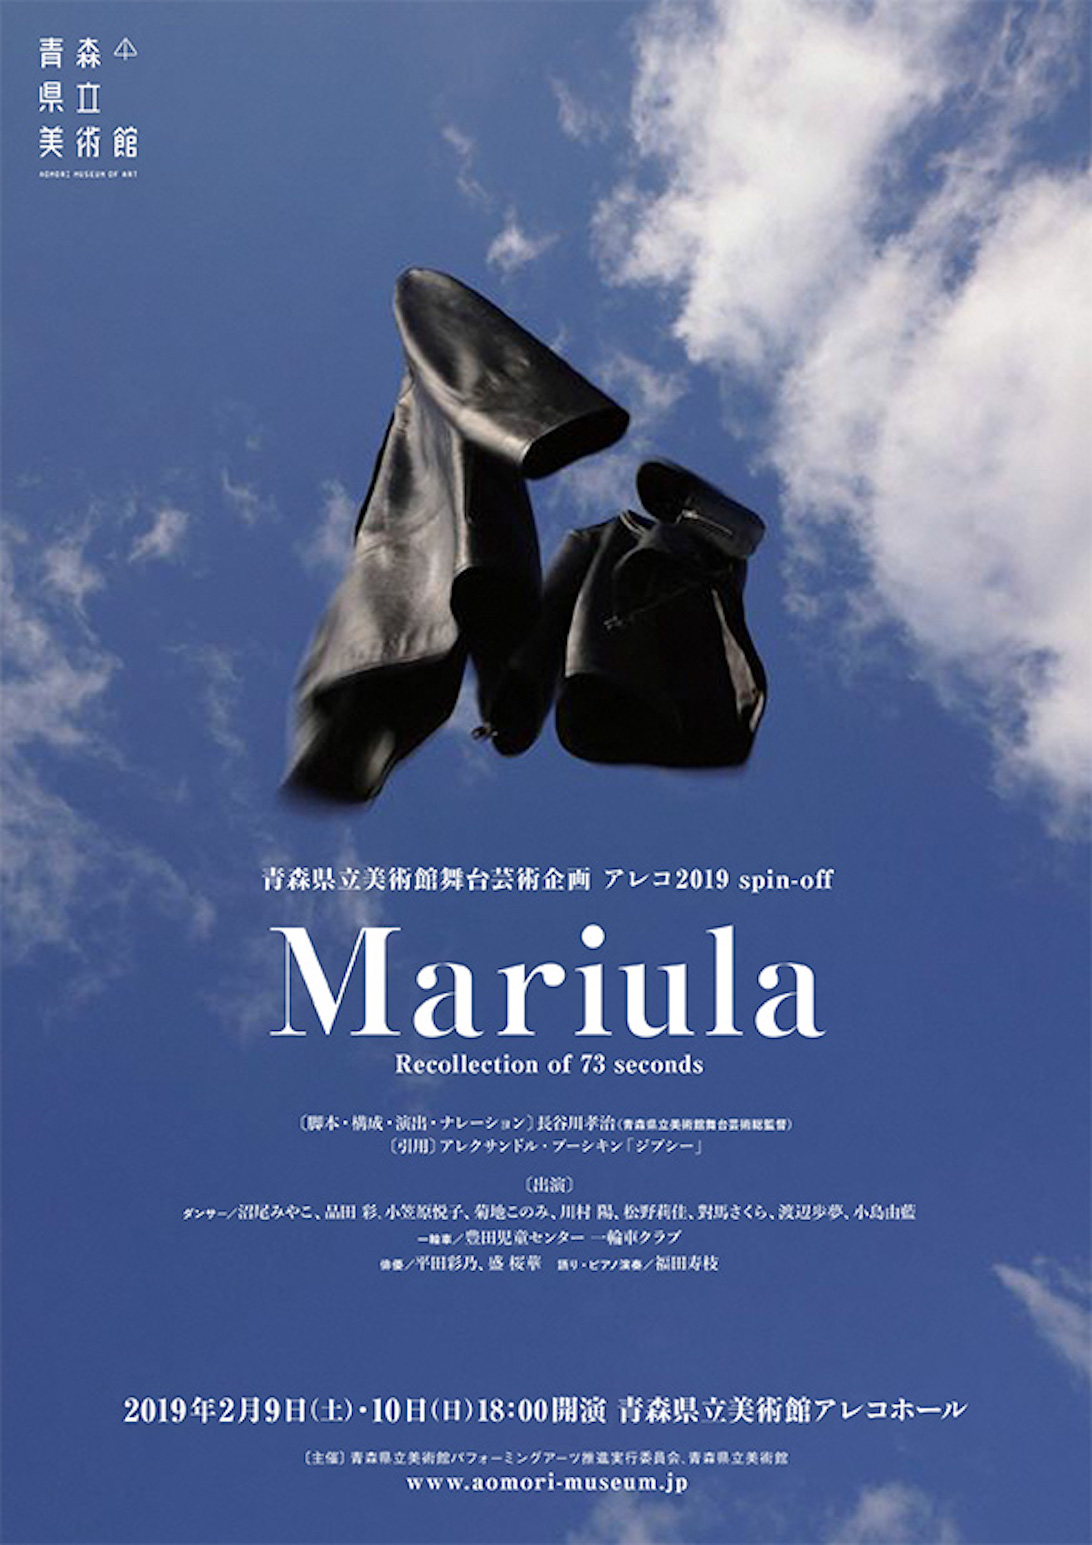 青森県立美術館舞台芸術企画　アレコ2019　spin-off 「Mariula」 　Recollection of 73 seconds